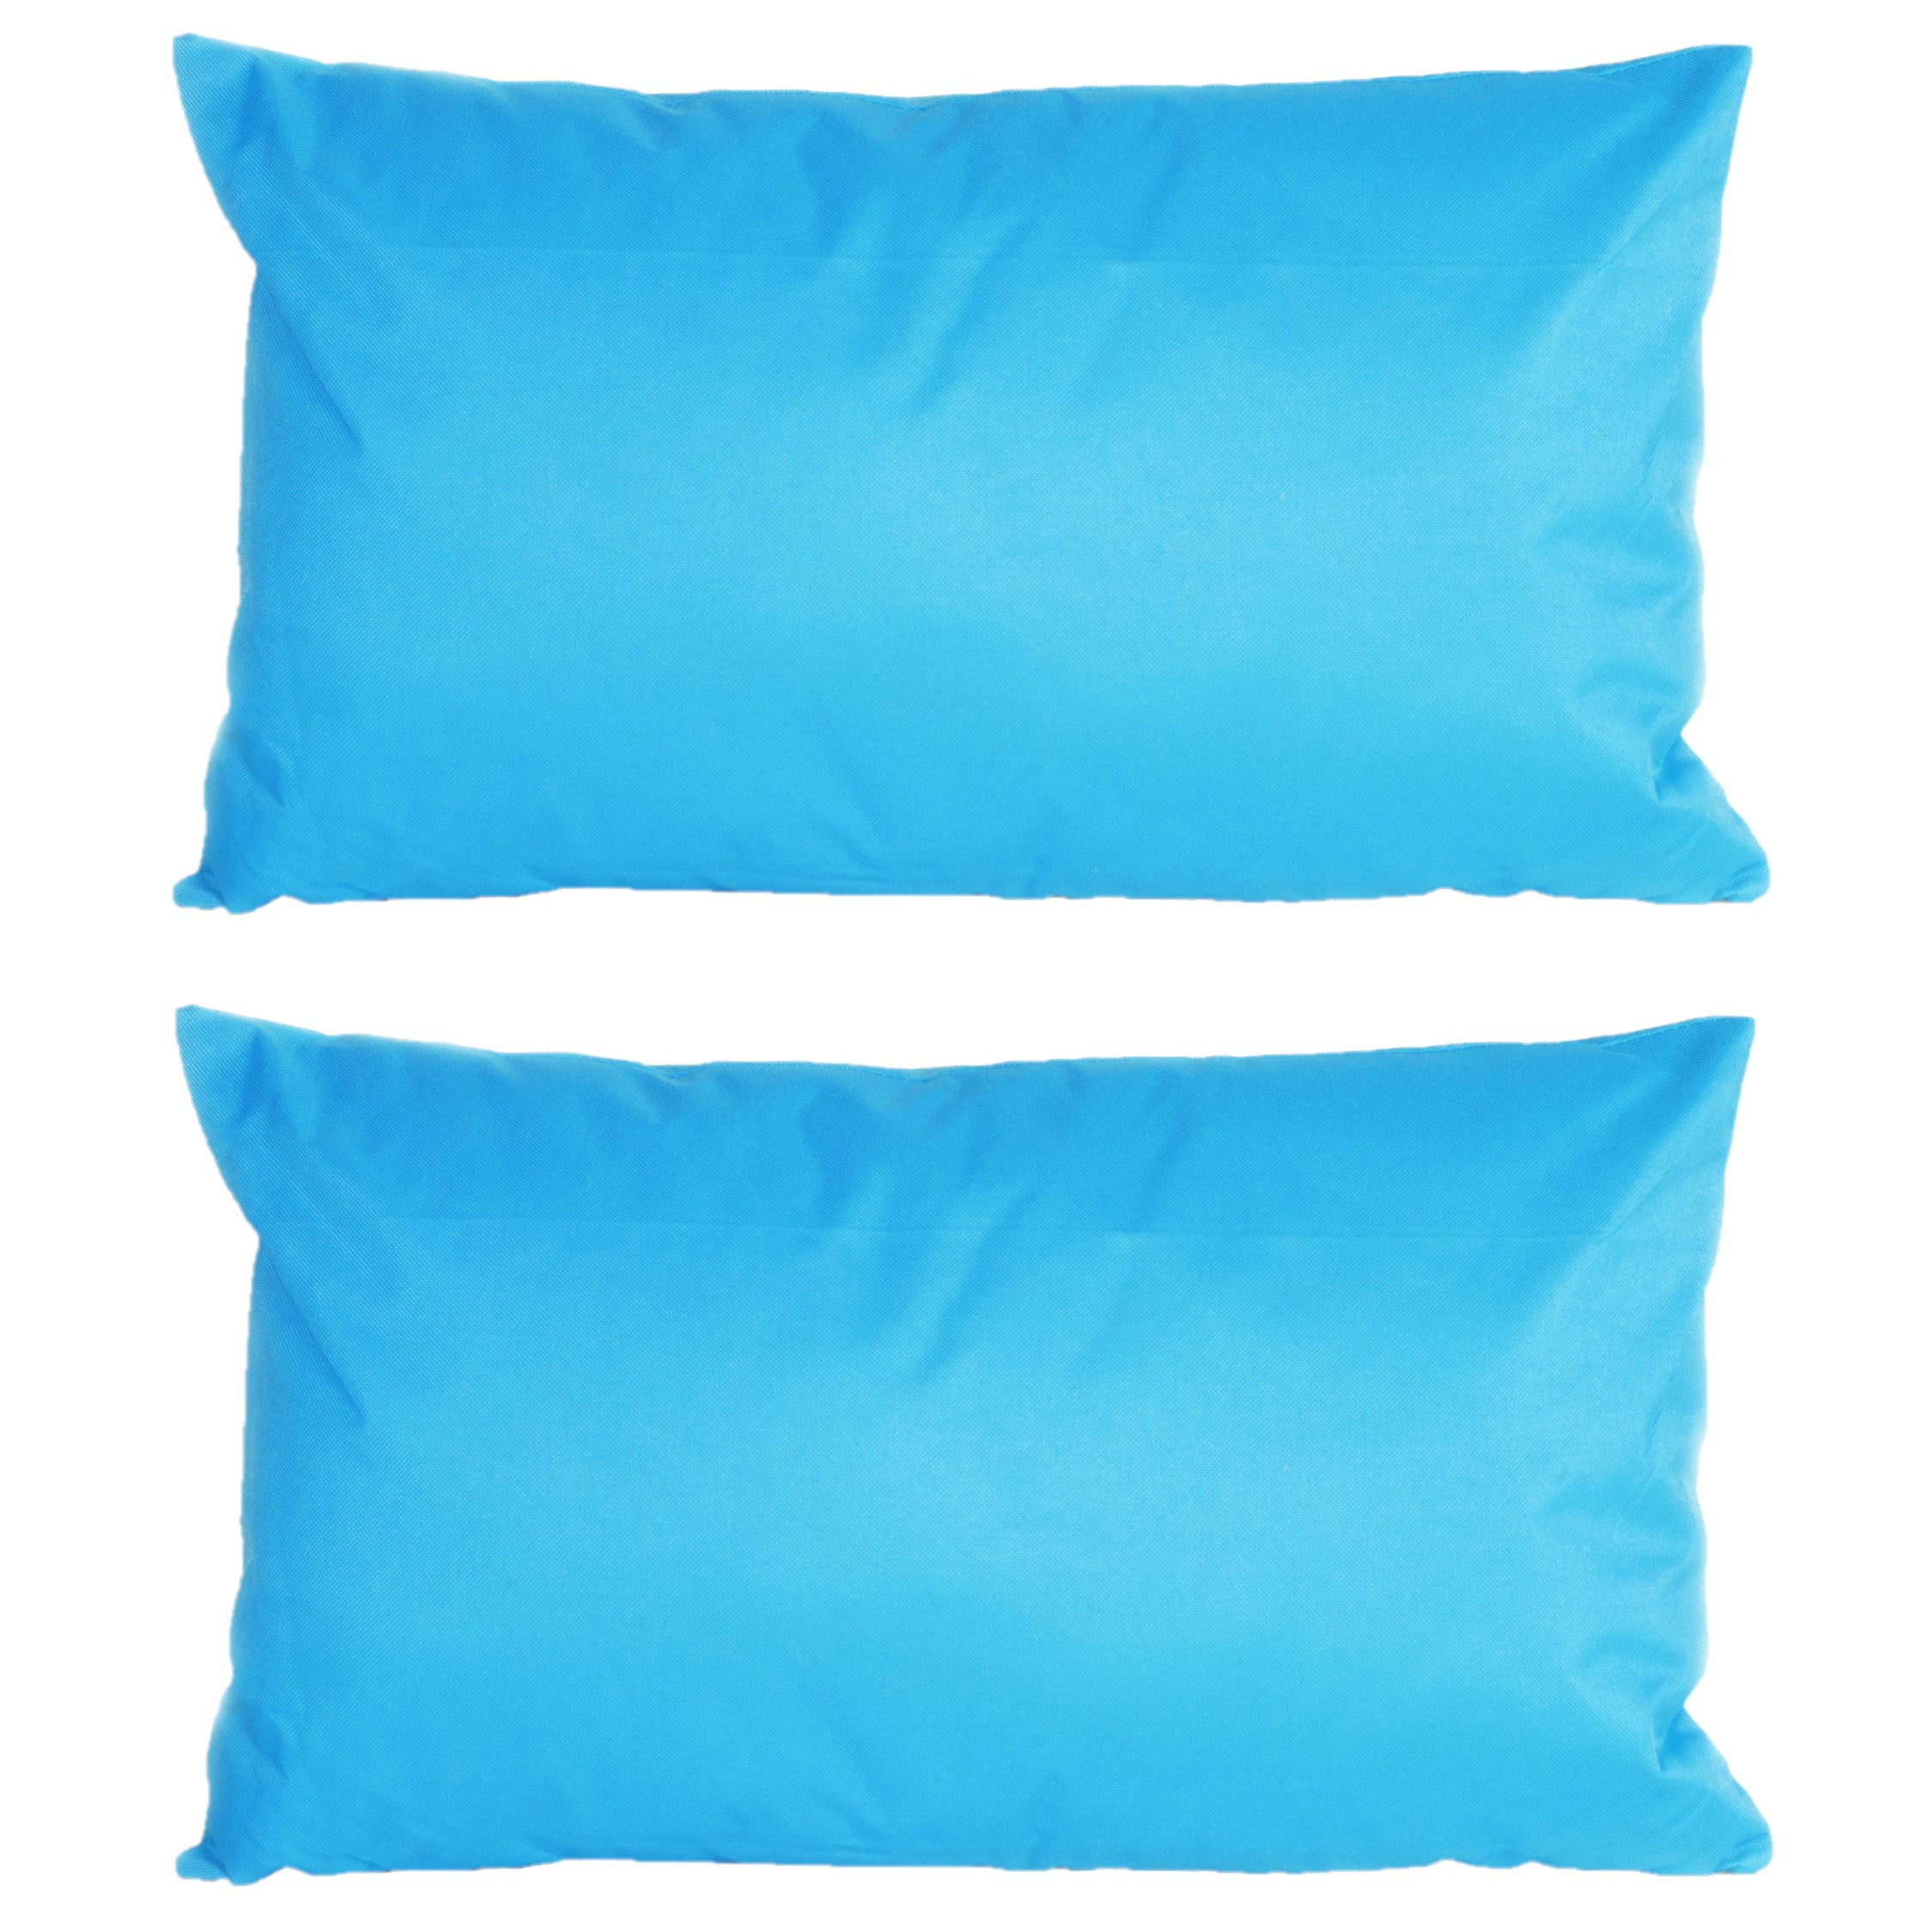 2x stuks bank-sier kussens voor binnen en buiten in de kleur lichtblauw 30 x 50 cm Tuinkussens voor